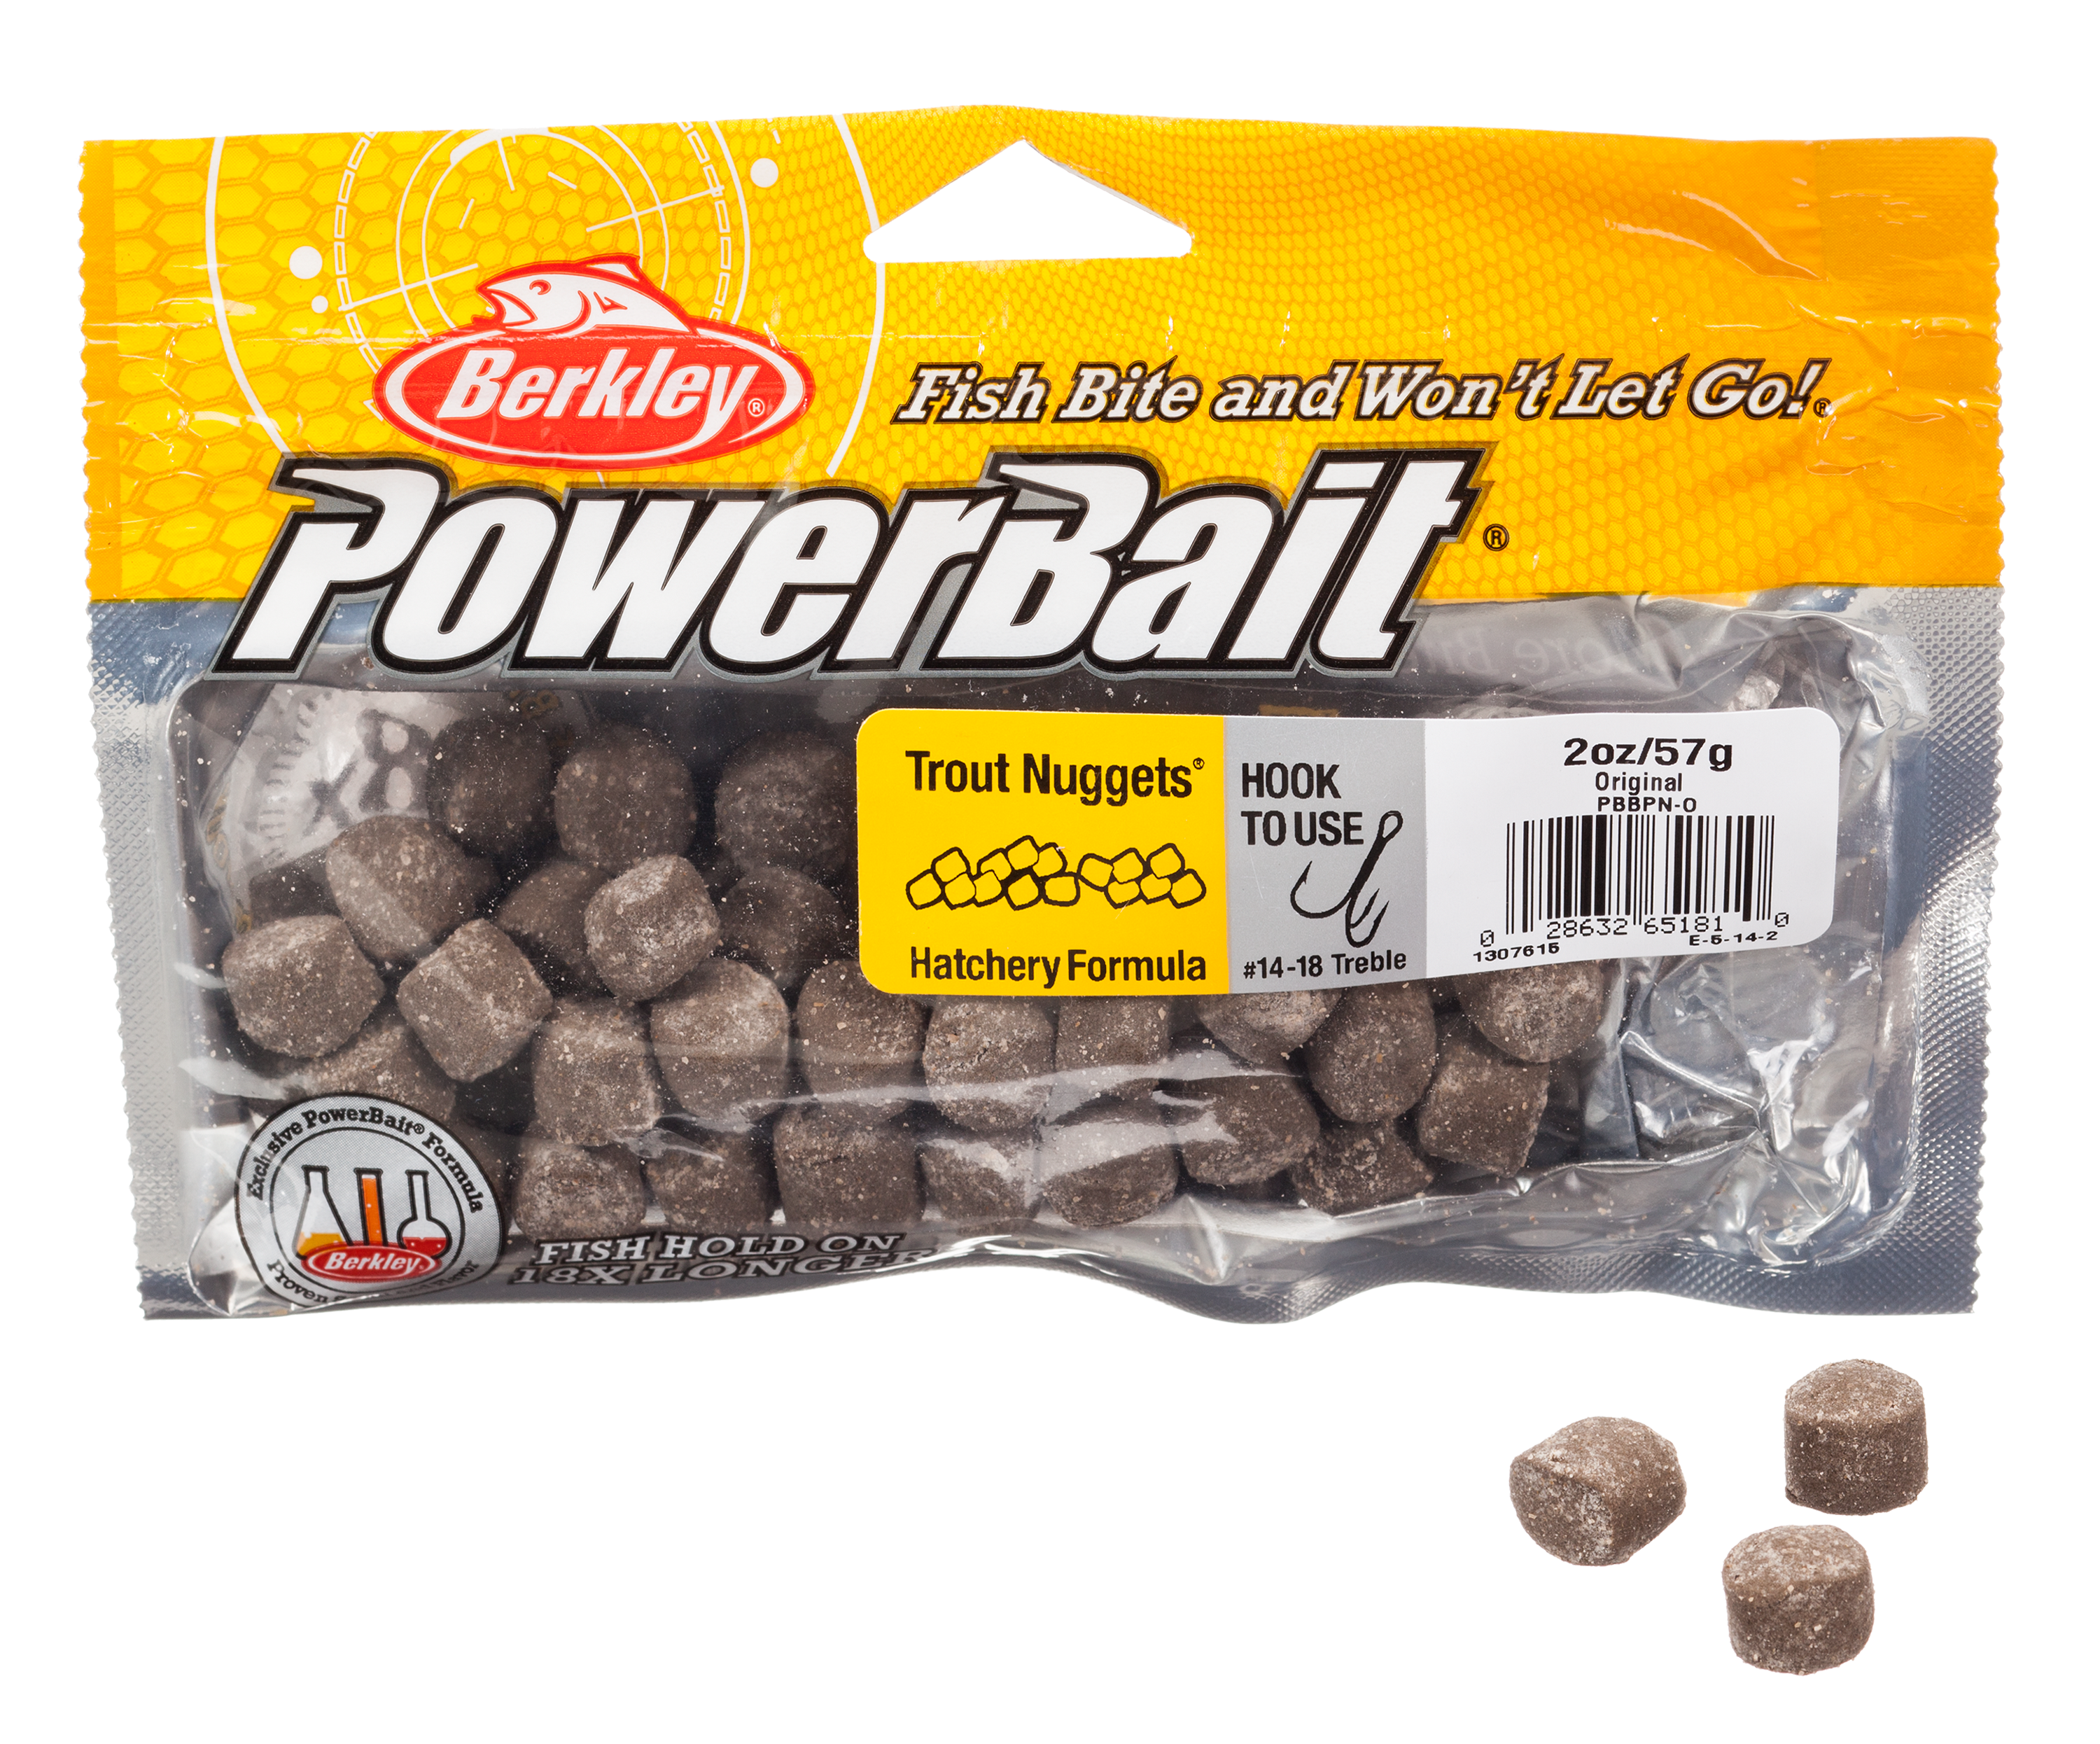  Berkley PowerBait Trout Dough Bait (All Models